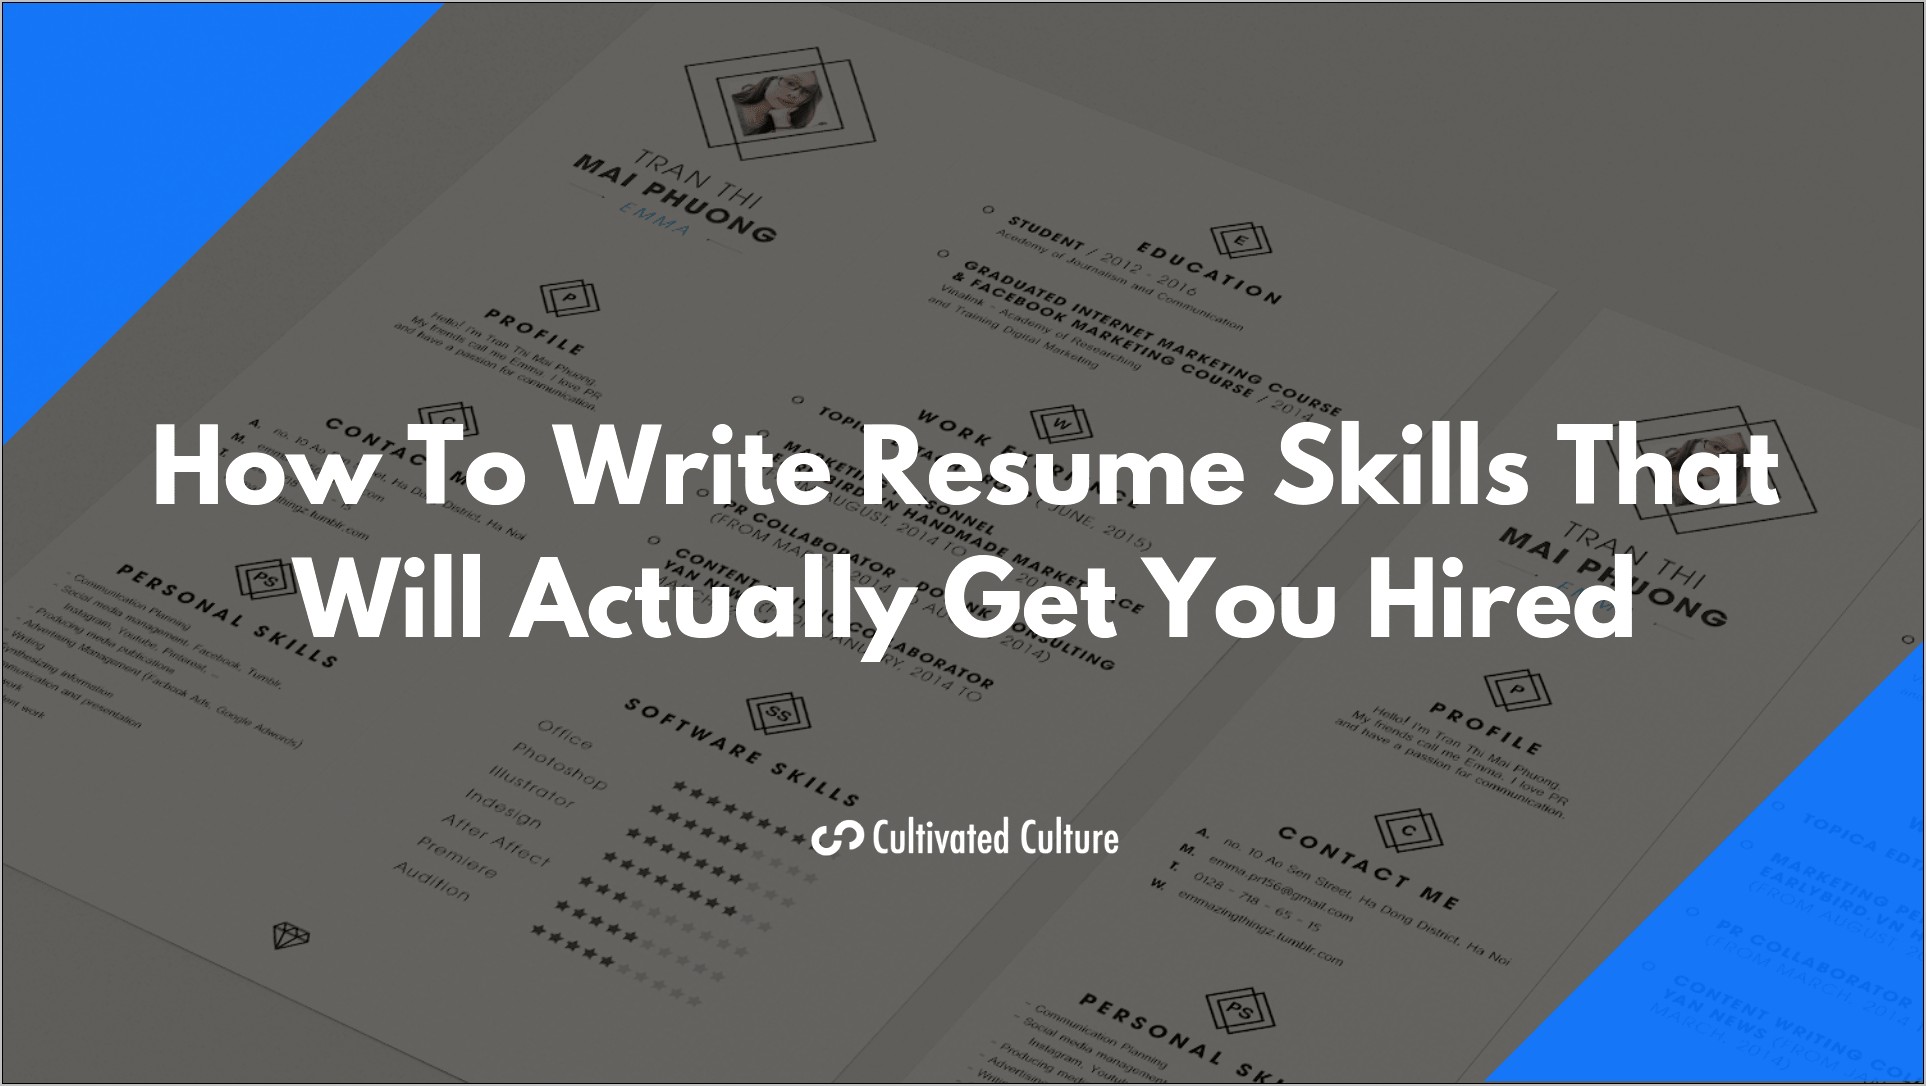 Listing Job Skills On A Resume